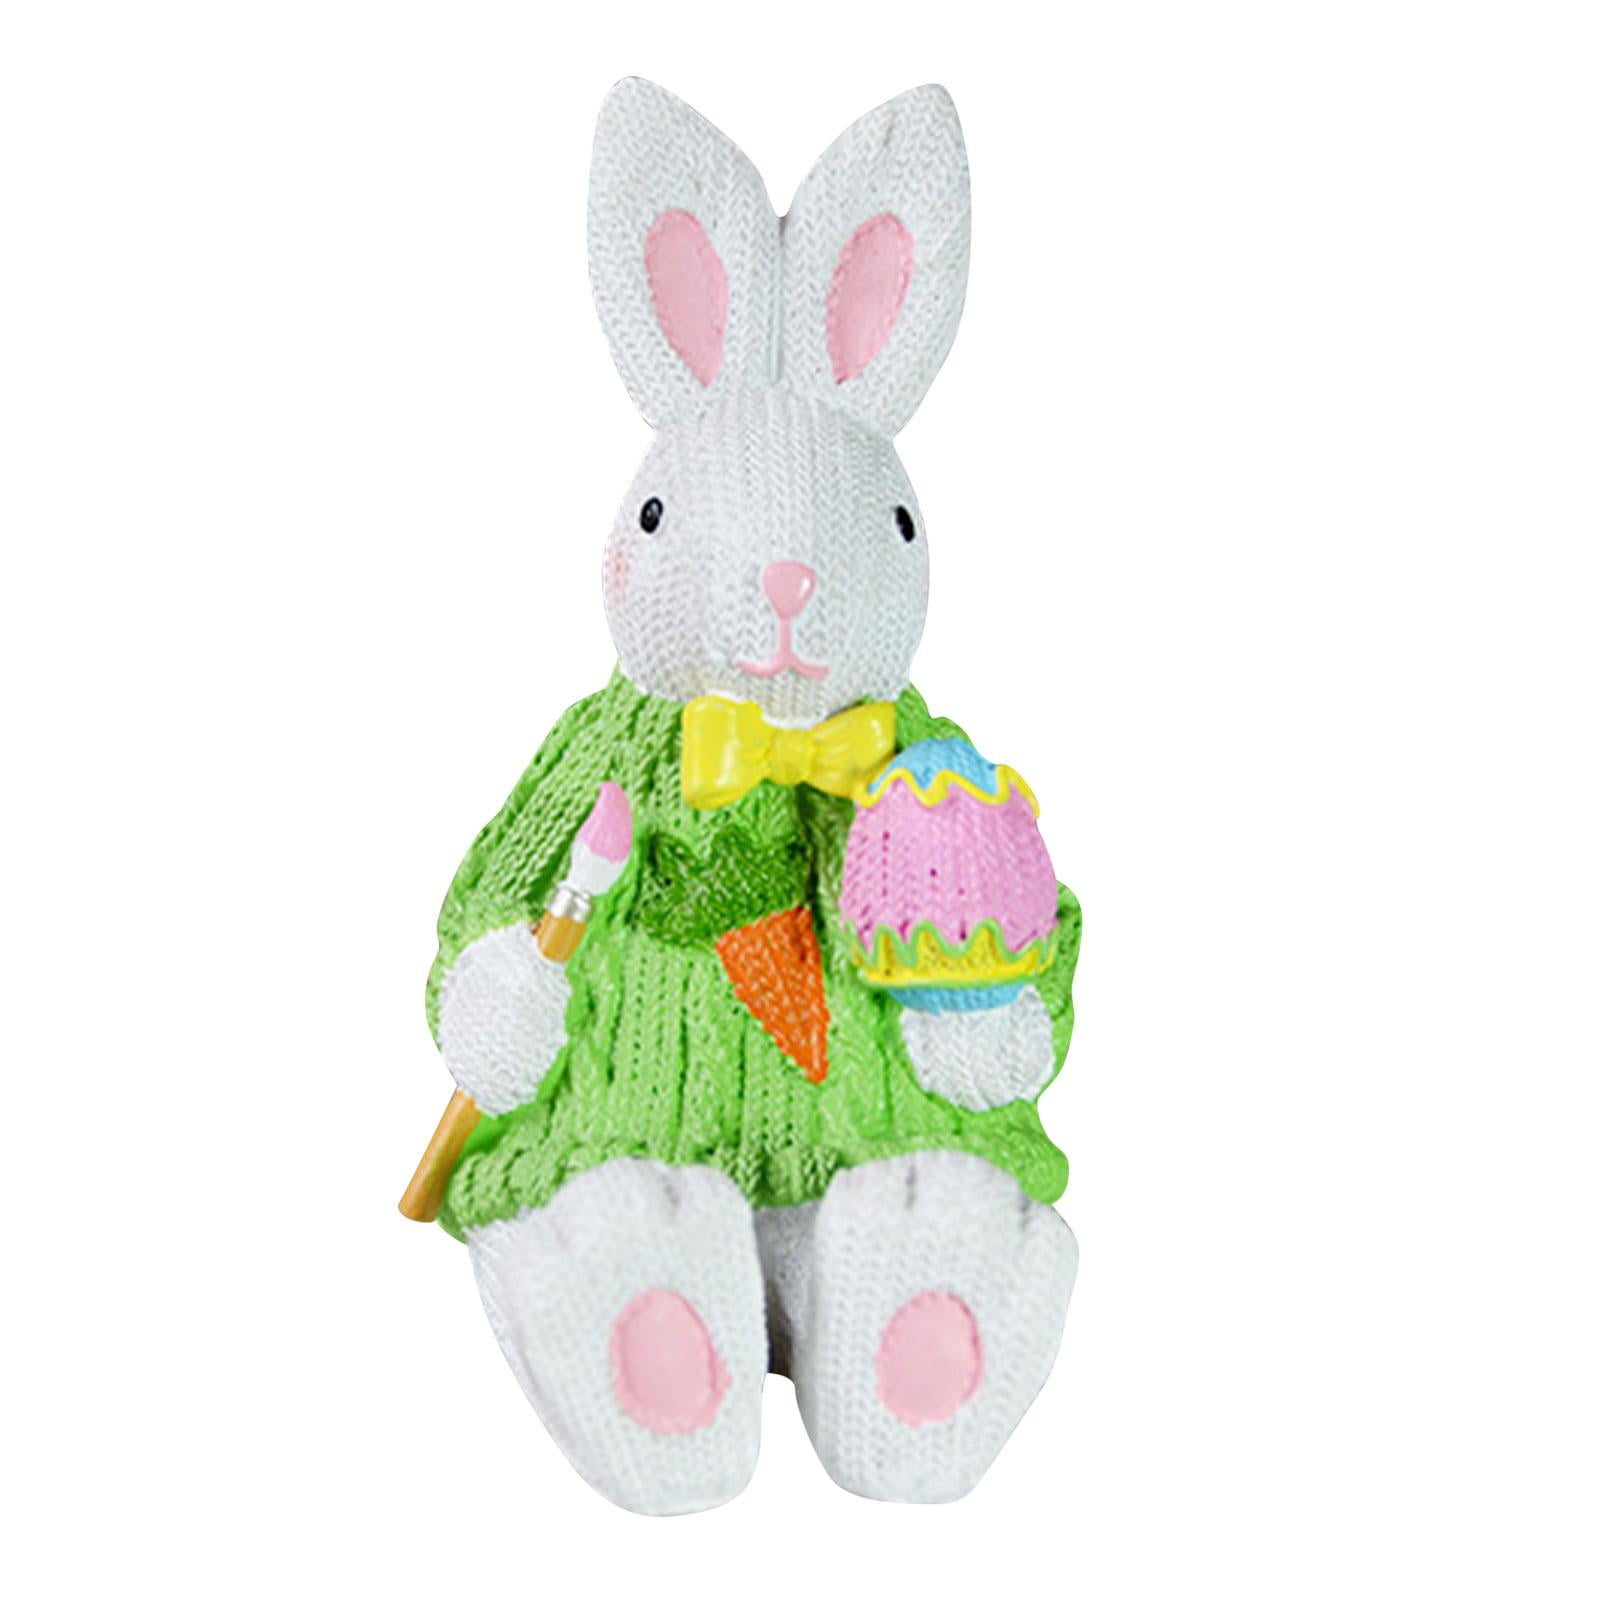 Details about   1 Pcs Felt Rabbit Decoration Easter Bunny Ornaments For Home Party Decoration 